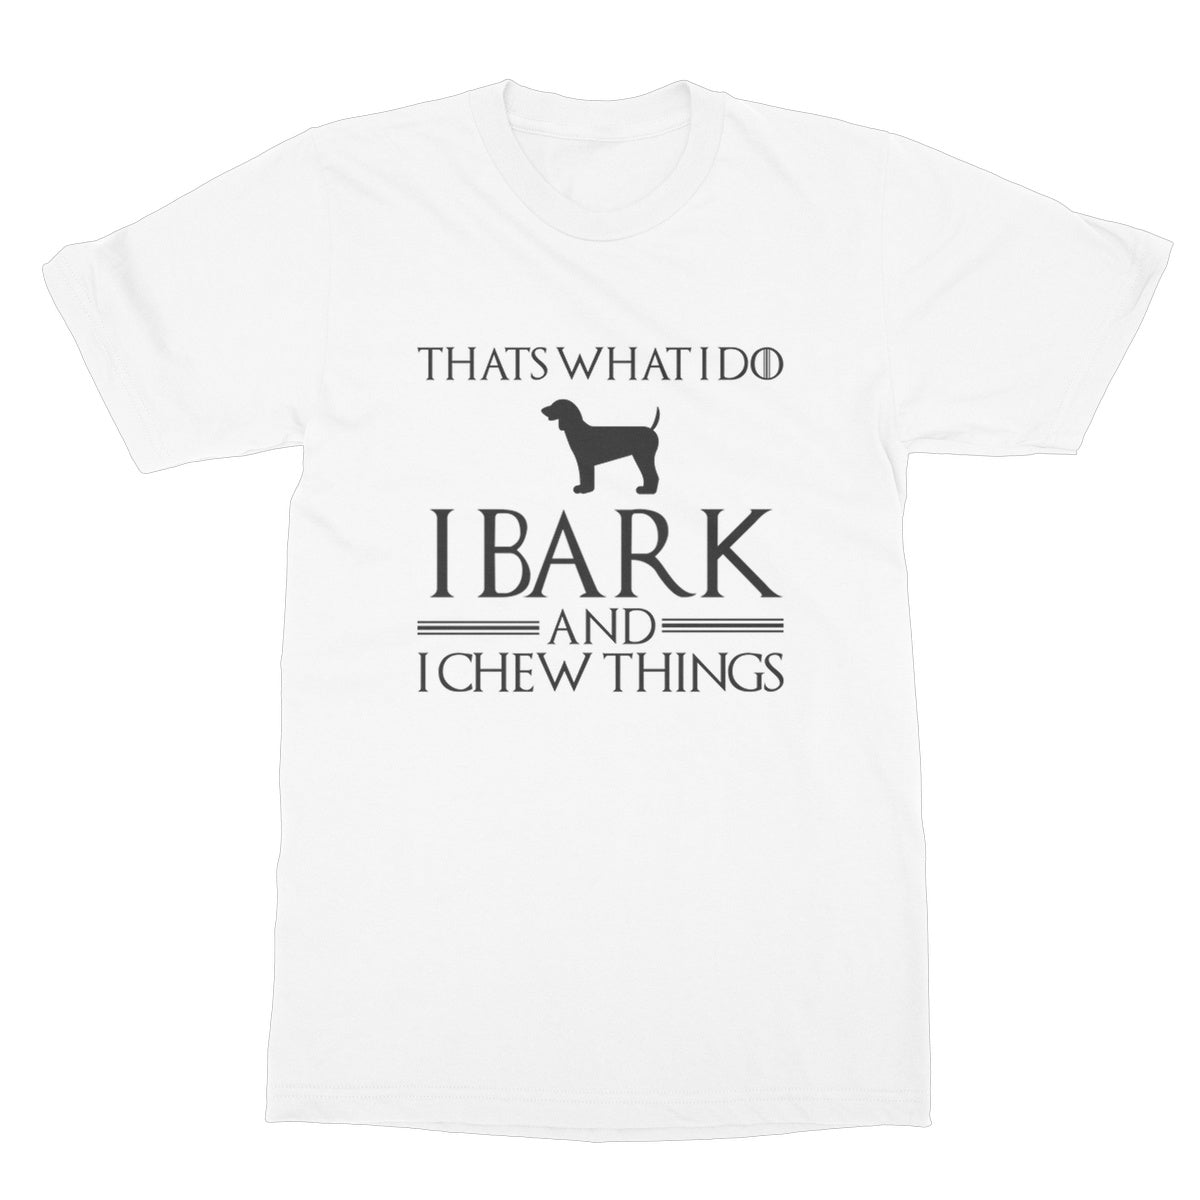 I bark and I chew thing t shirt white